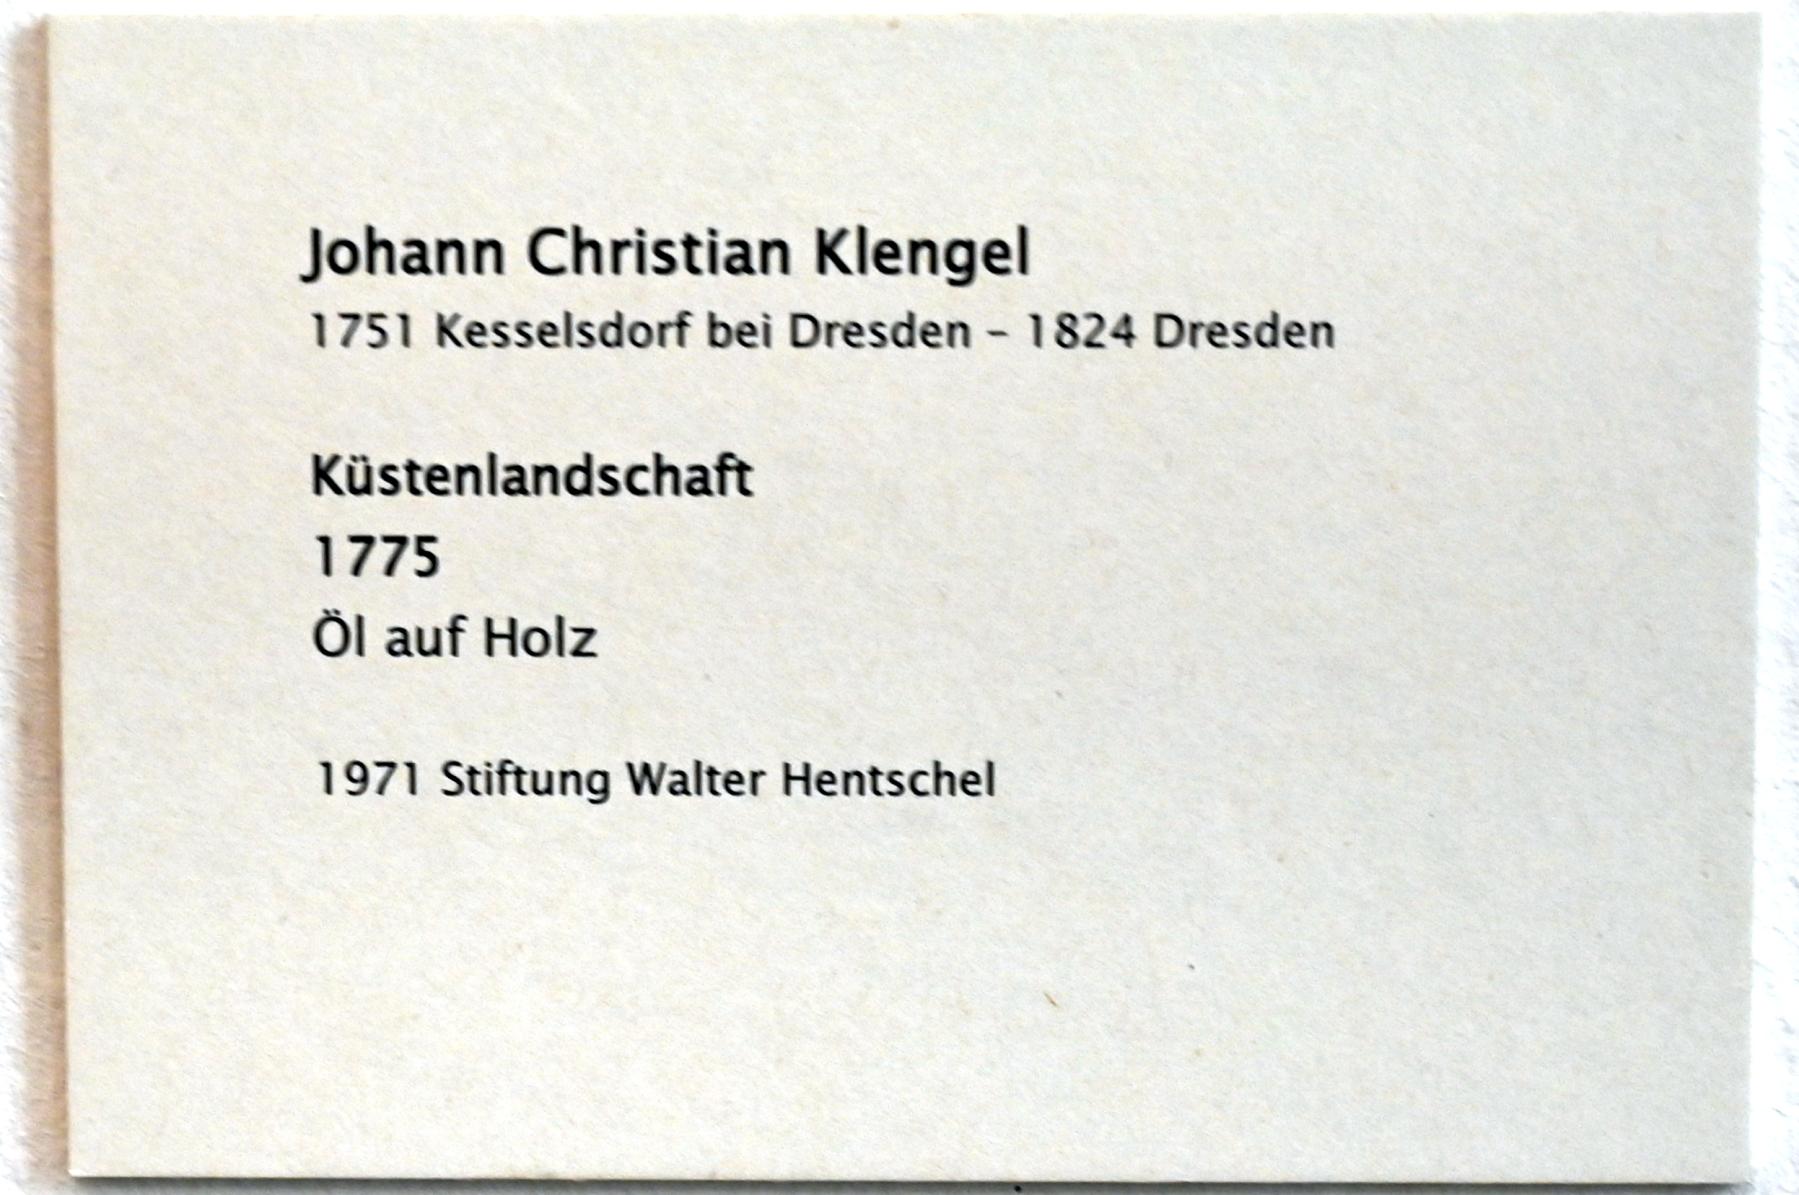 Johann Christian Klengel (1775–1818), Küstenlandschaft, Zwickau, Kunstsammlungen, Zeit der Empfindsamkeit, 1775, Bild 2/2